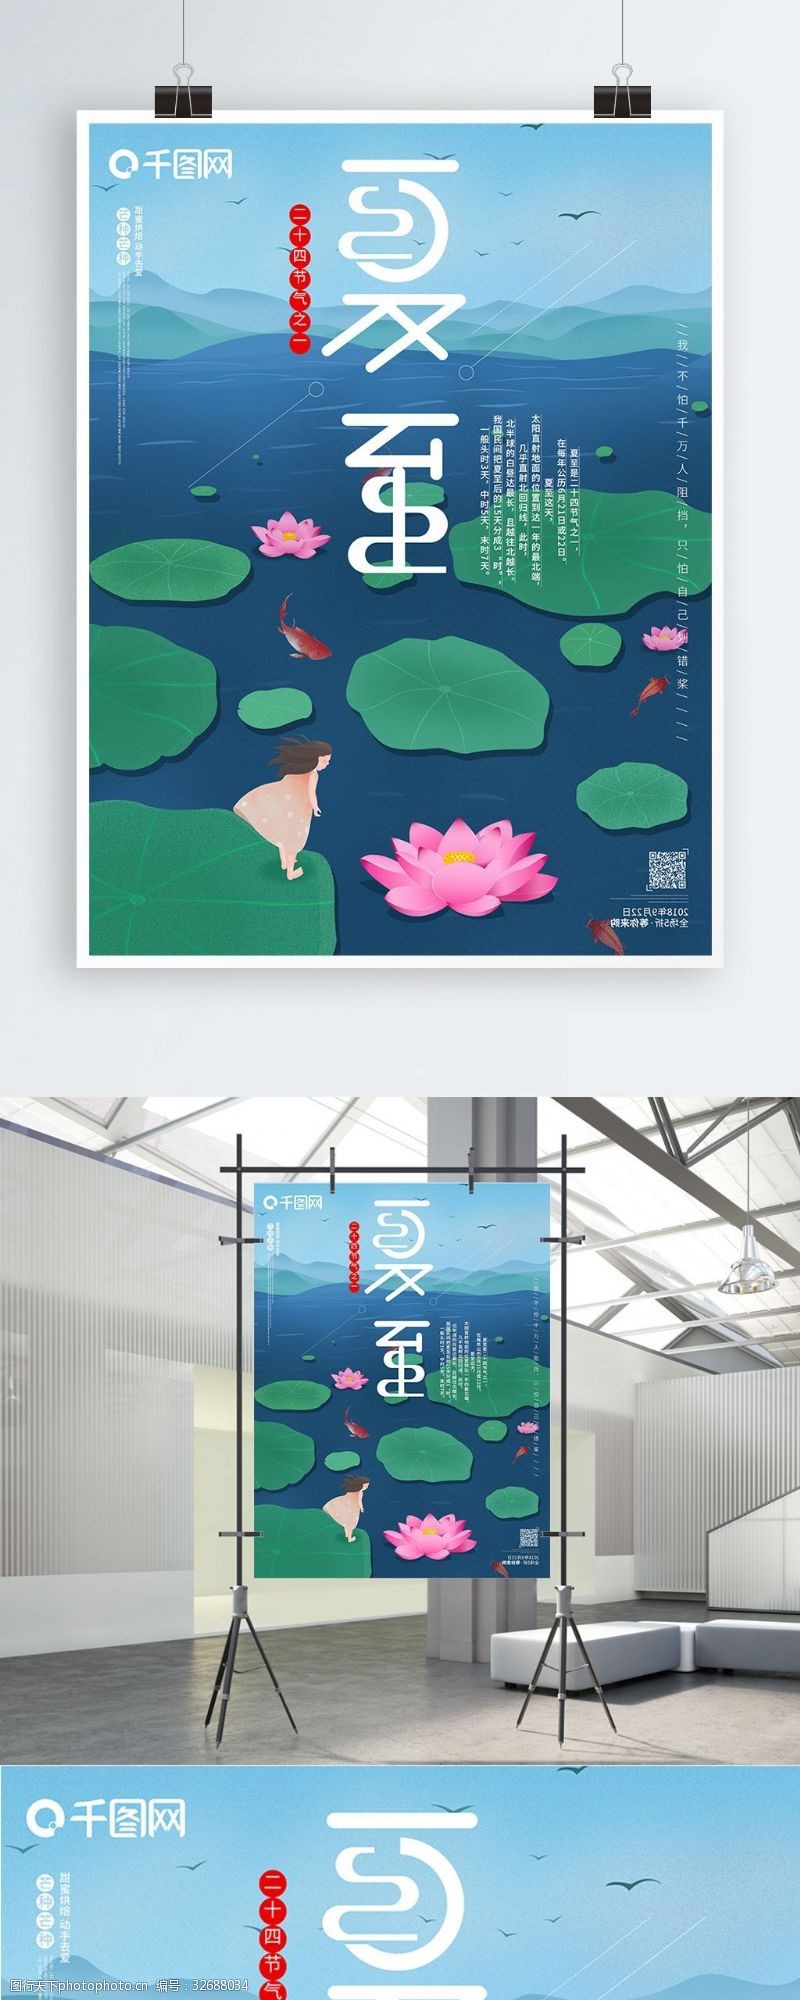 夏至立夏24节气之一中国传统节日原创海报